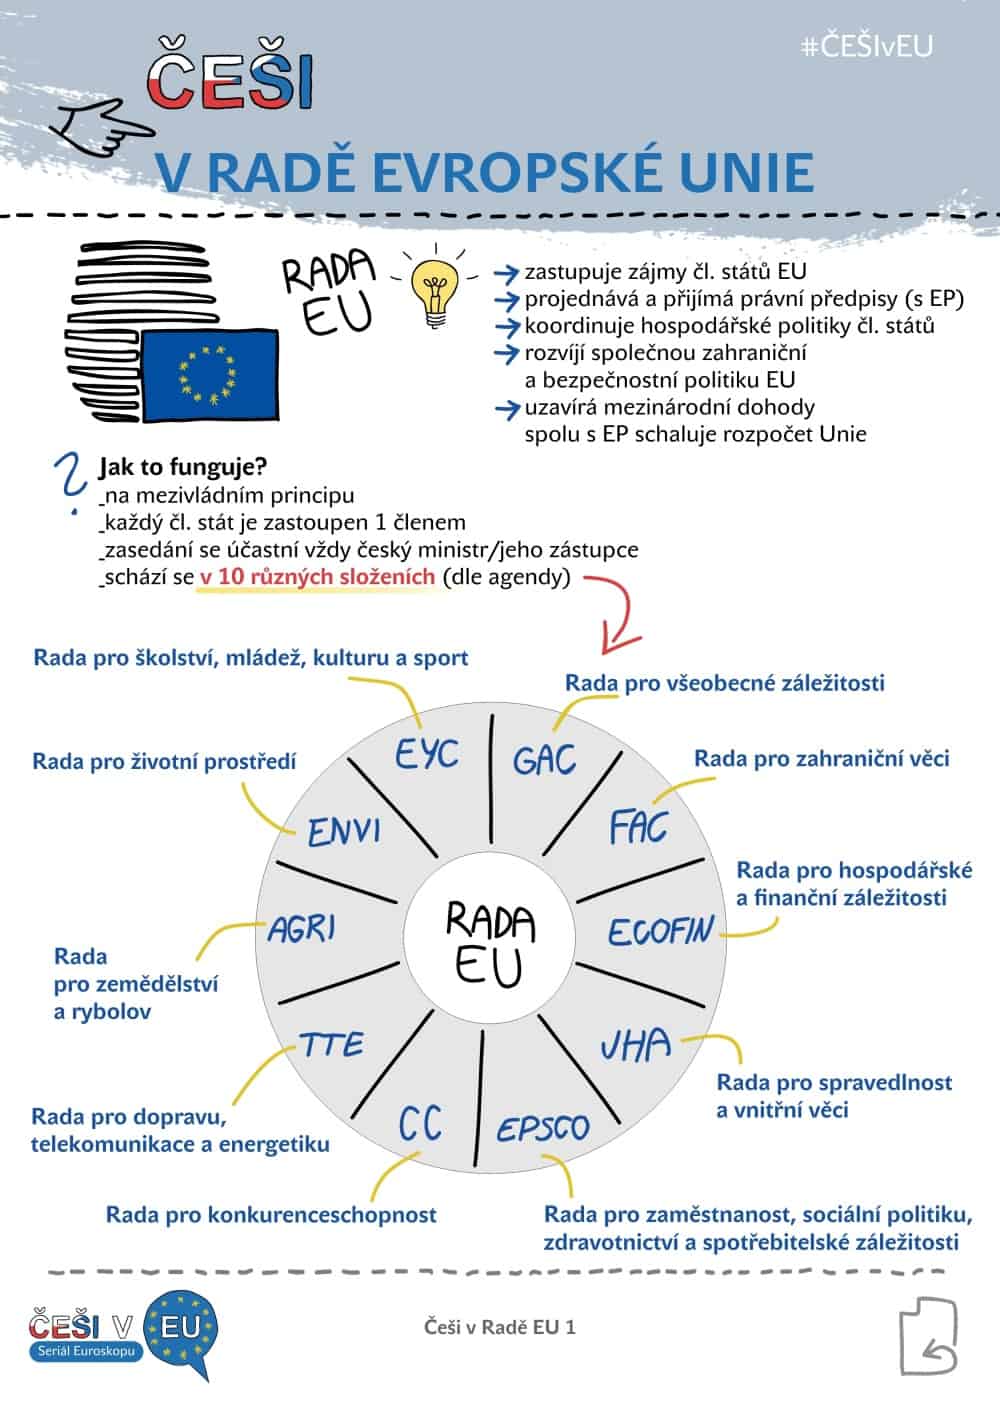 Češi v EU 2, infografika: Kristina Kvapilová 2018